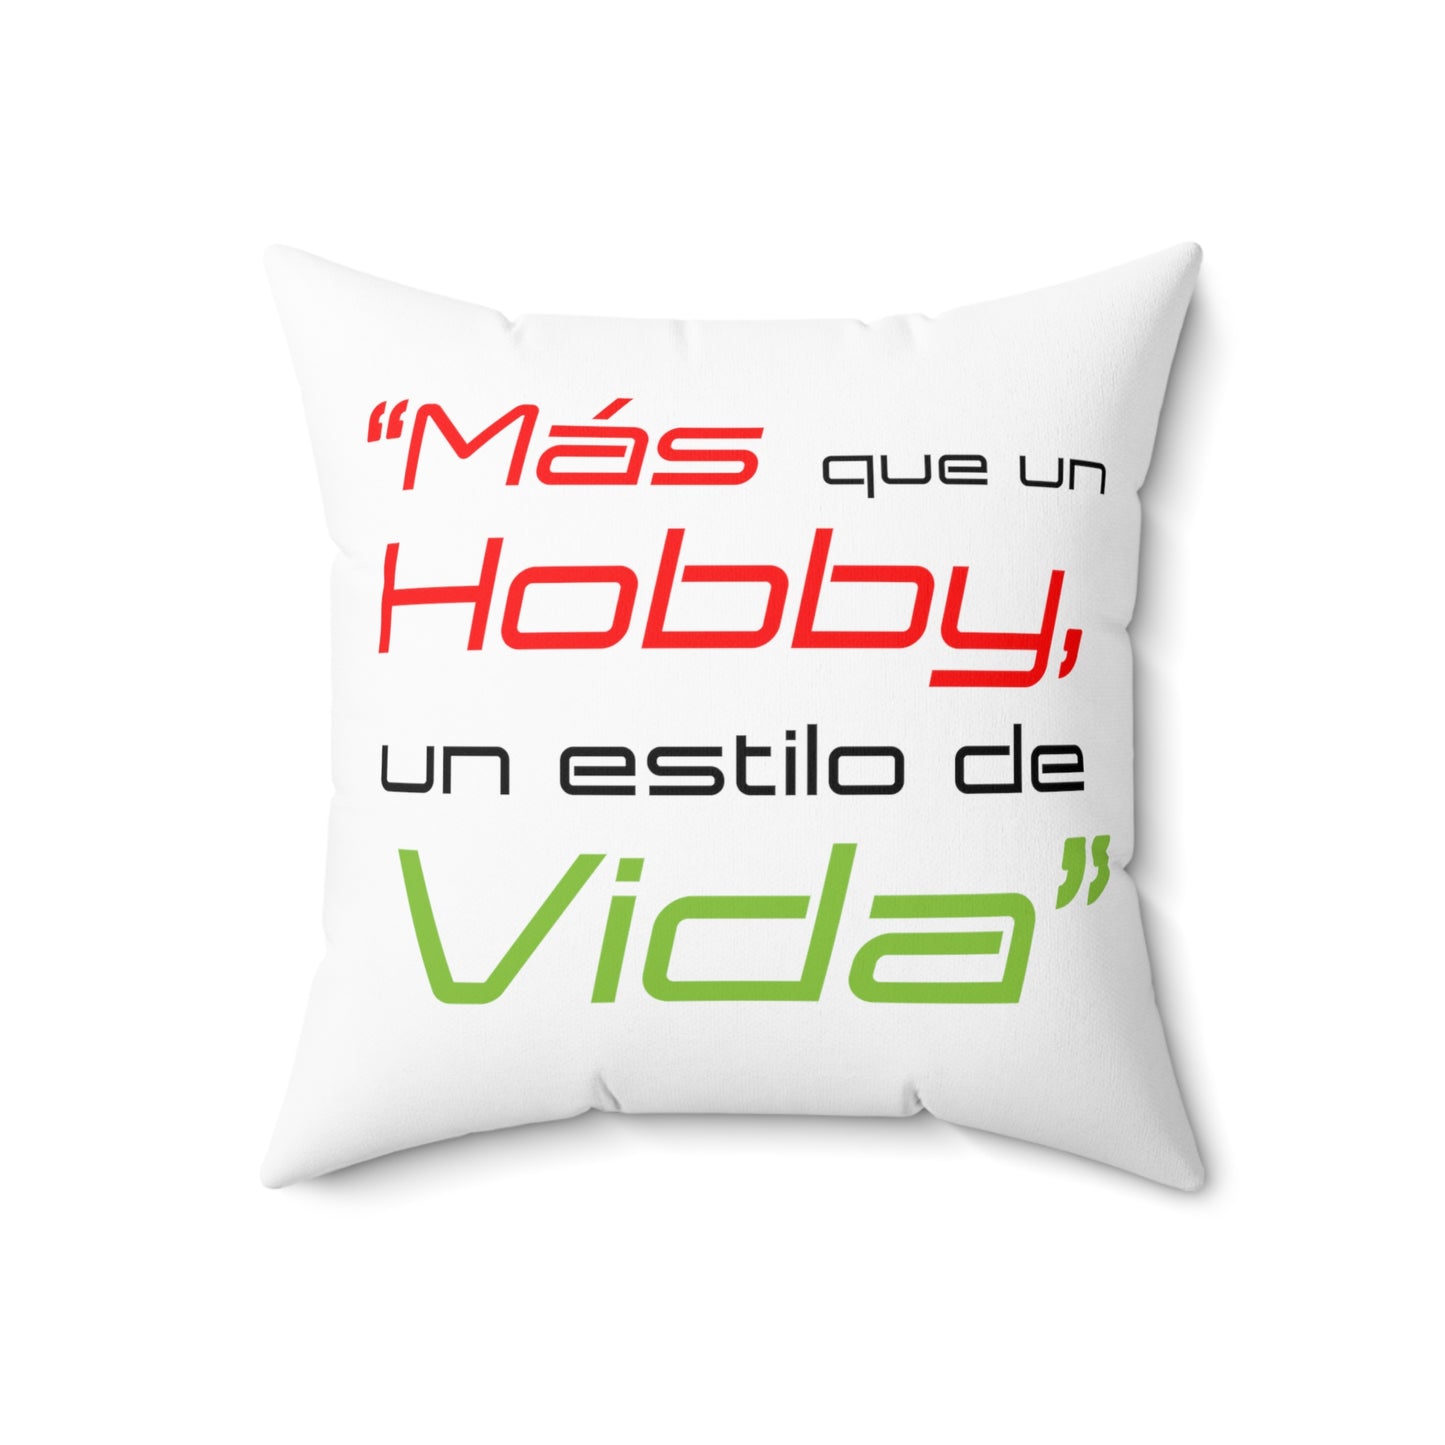 "Mas que un Hobby, es un estilo de VIDA" - LOGO OG - Spun Polyester Square Pillow